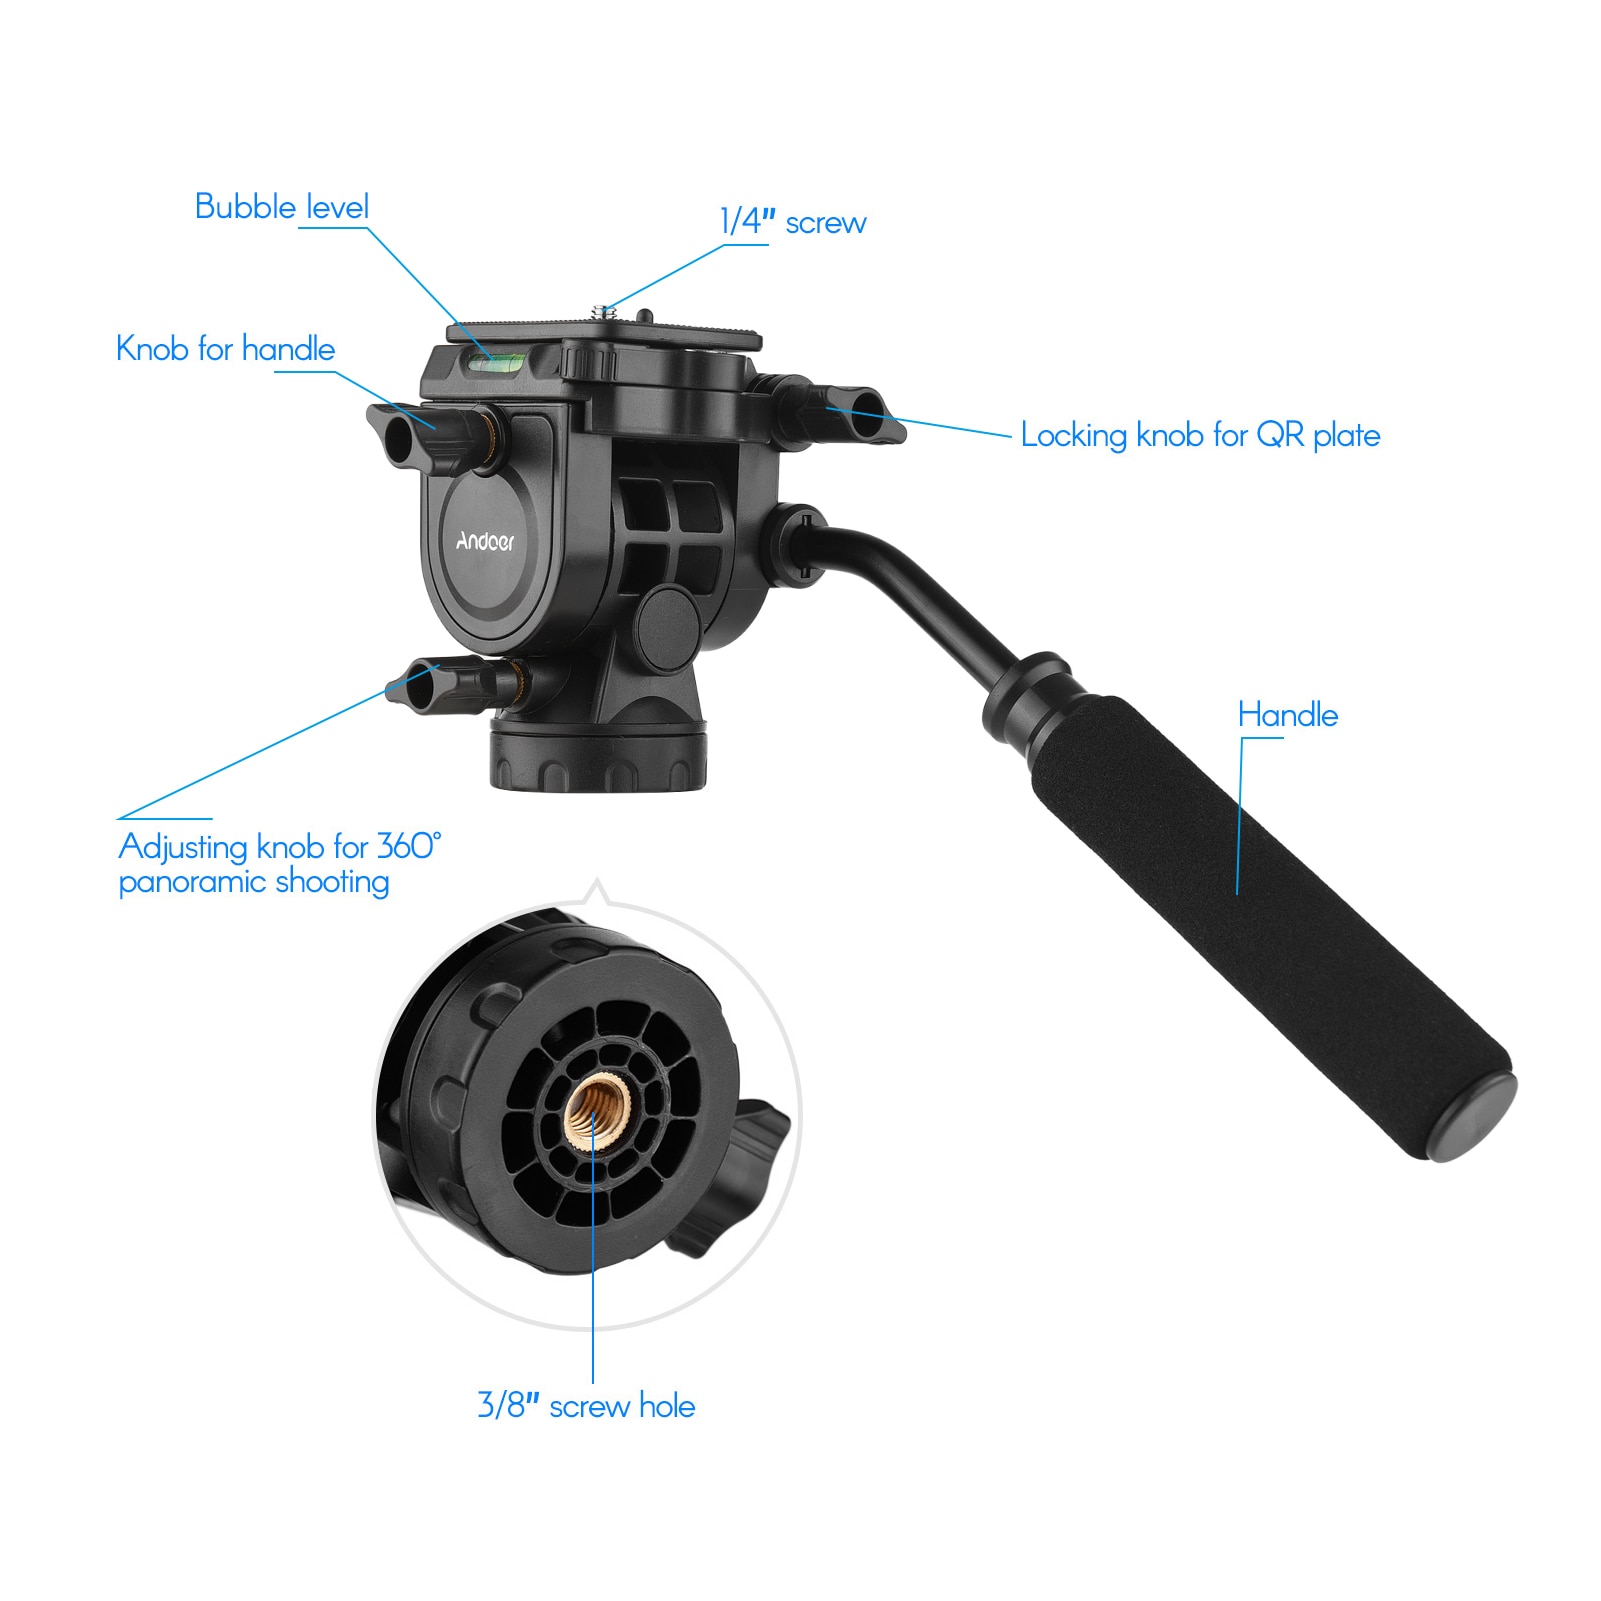 Væskehydraulisk kuglehoved panoramafotografering med håndtag til 1/4 tommer skruekamera videokamera og 3/8 tommer monopod stativ